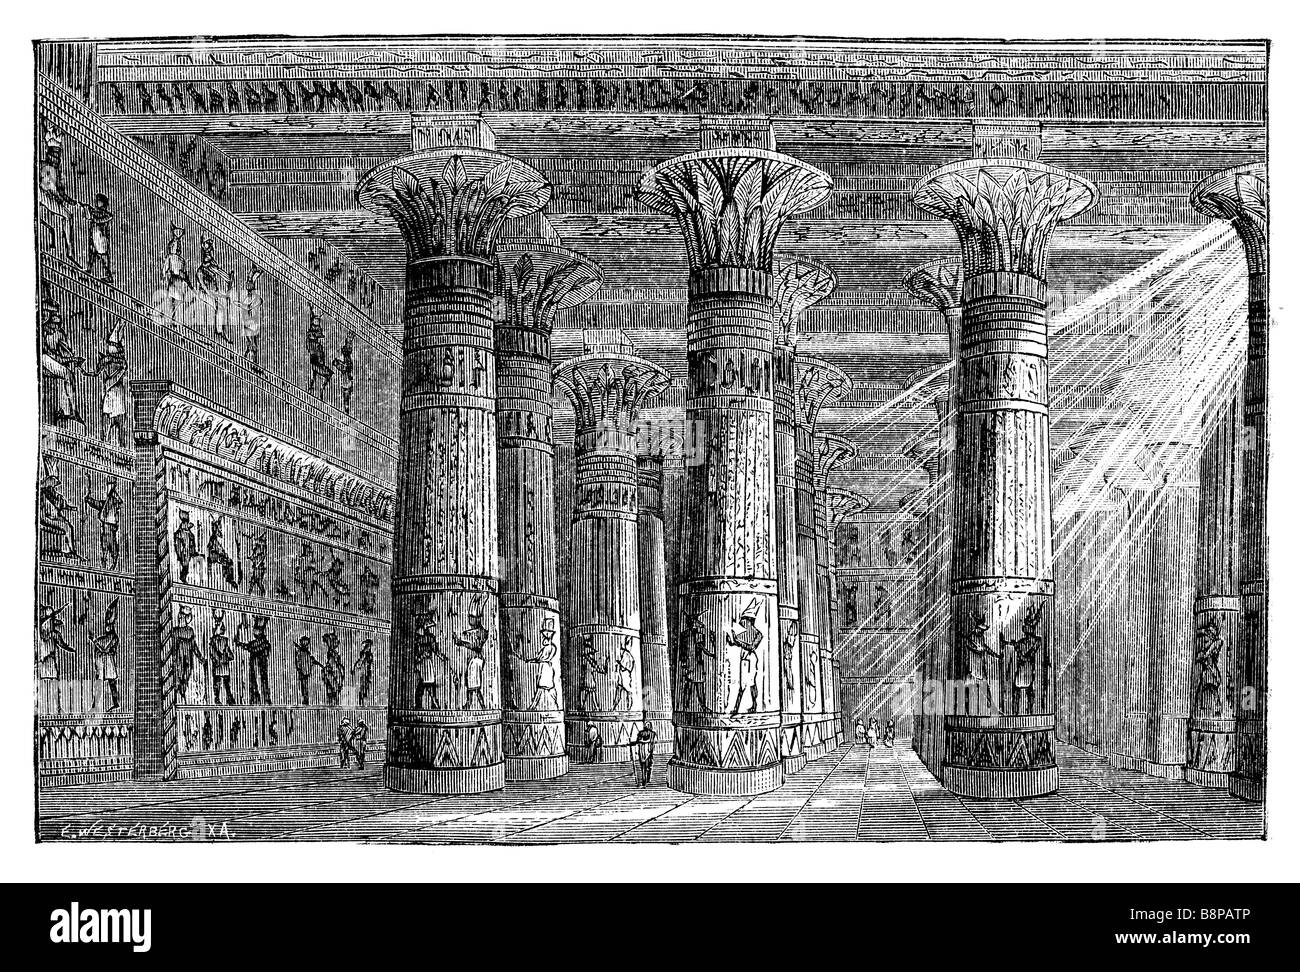 Tempio egizio. Originariamente pubblicato nel libro svedese Historisk läsebok pubblicato in 1882 Foto Stock